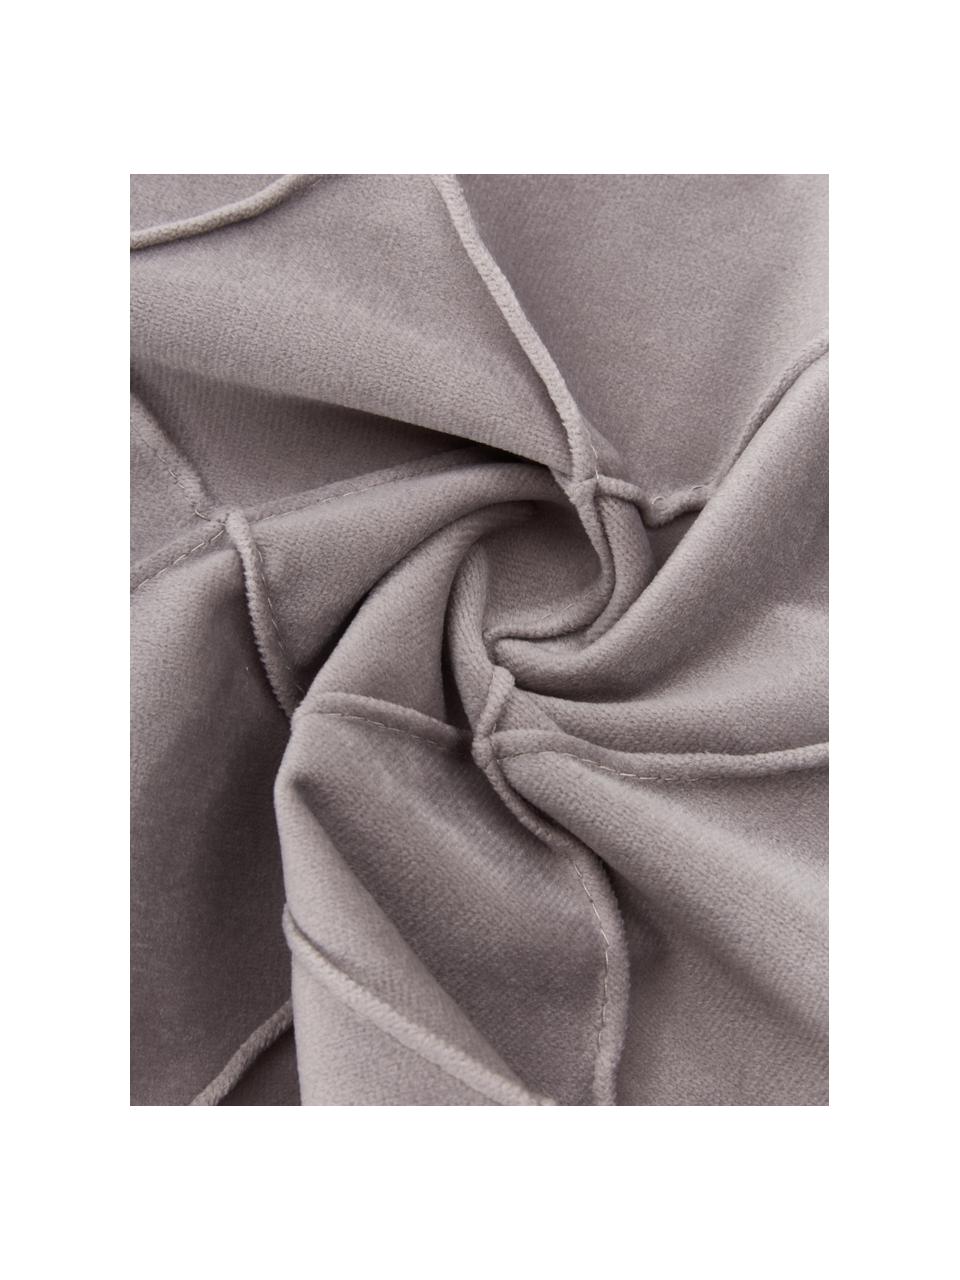 Fluwelen kussenhoes Luka in lichtgrijs met structuur-ruitpatroon, Fluweel (100% polyester), Grijs, B 40 x L 40 cm